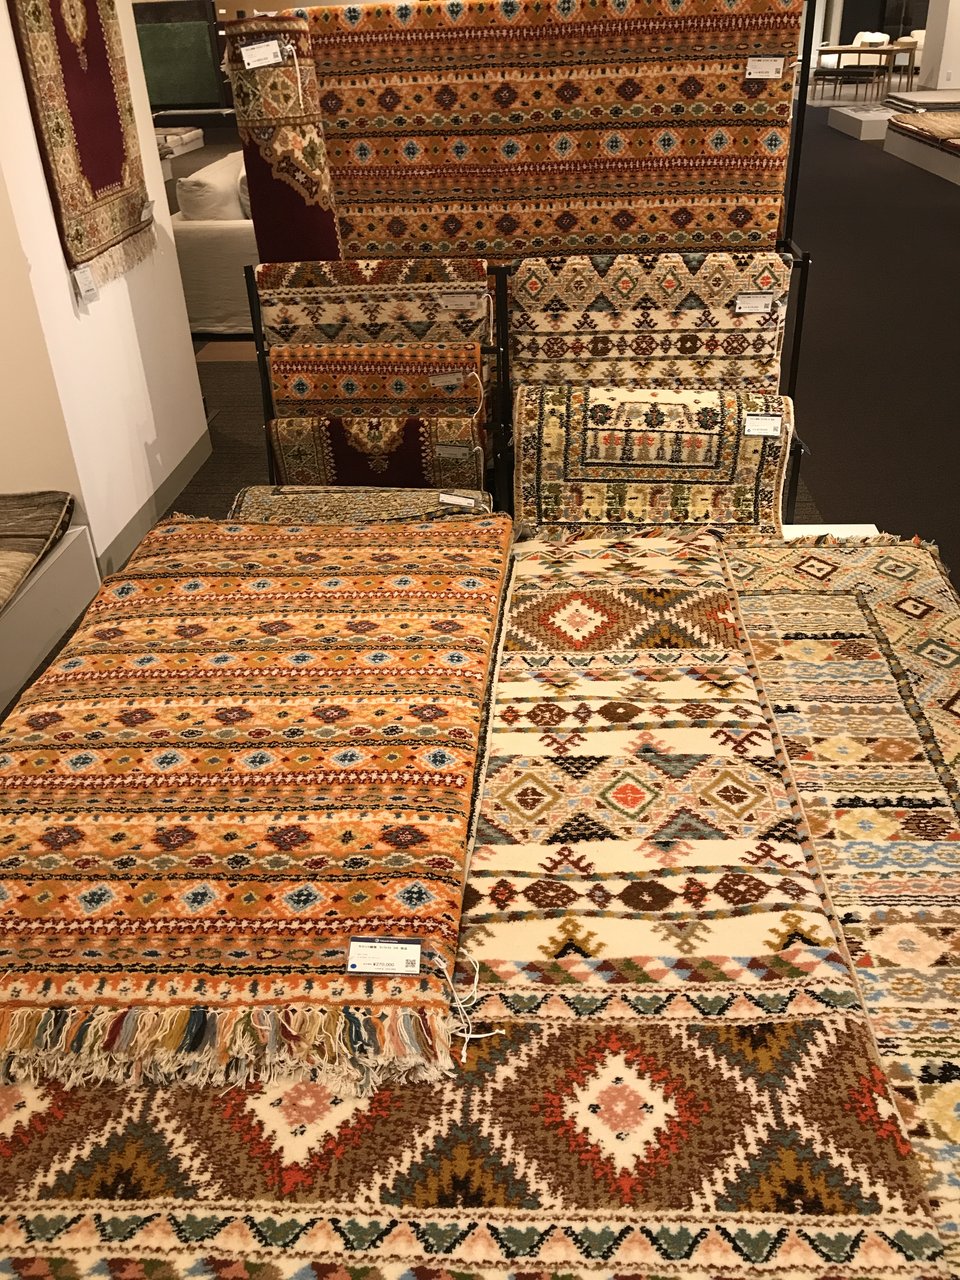 日本では珍しいモロッコ絨毯 匠大塚 春日部本店